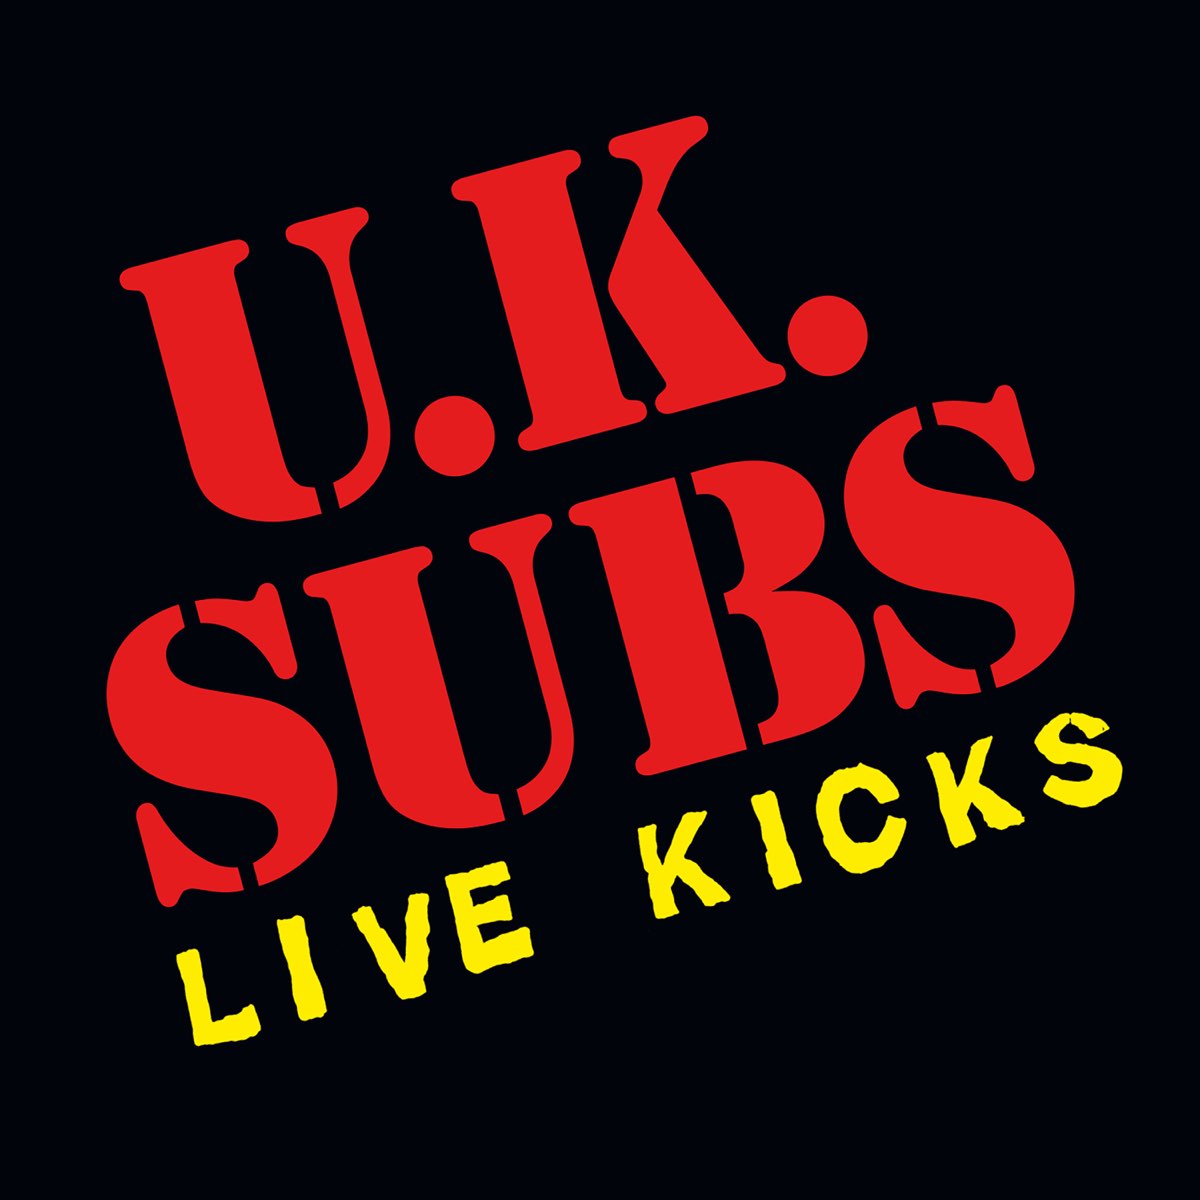 Uk subs. Uk subs группа. U.K. subs. U.K. subs трафарет.